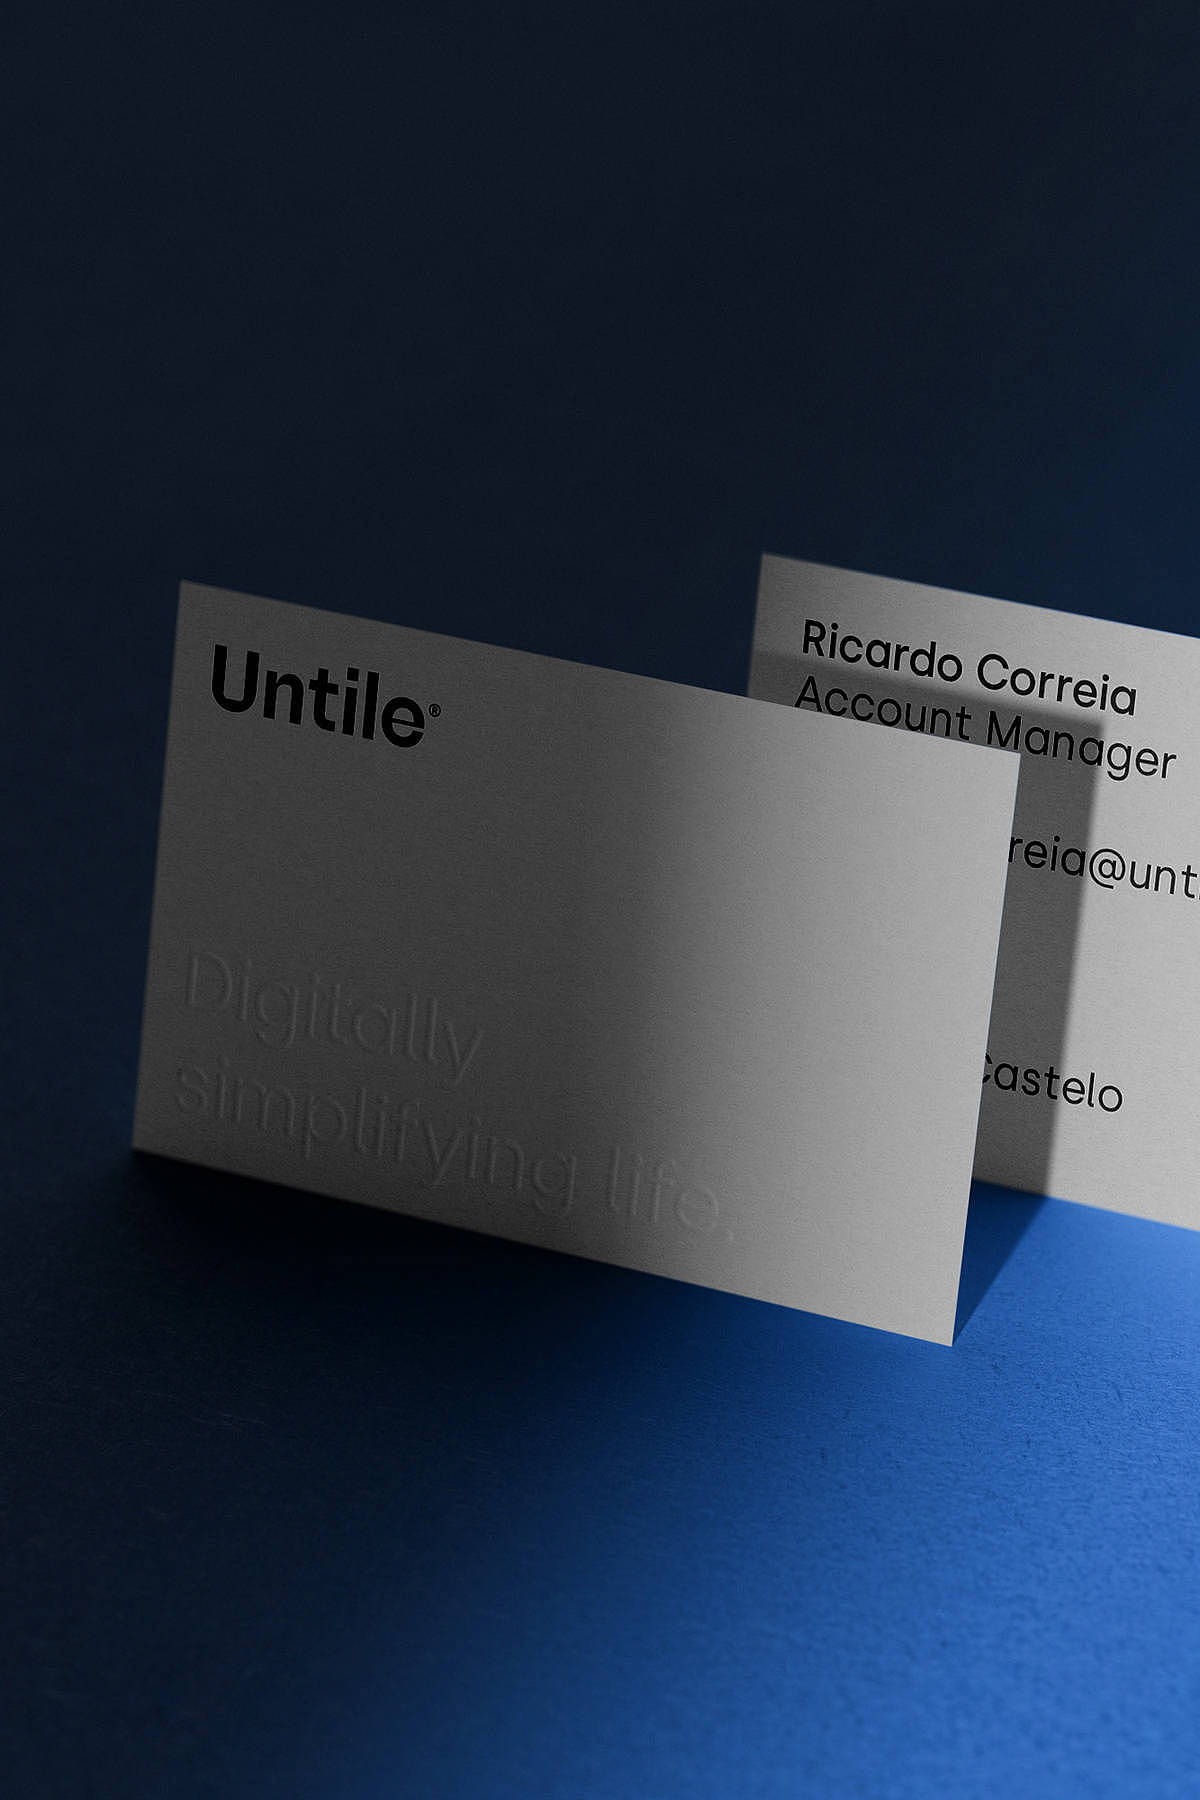 平面设计 | Untile 数字产品品牌形象设计 - 9